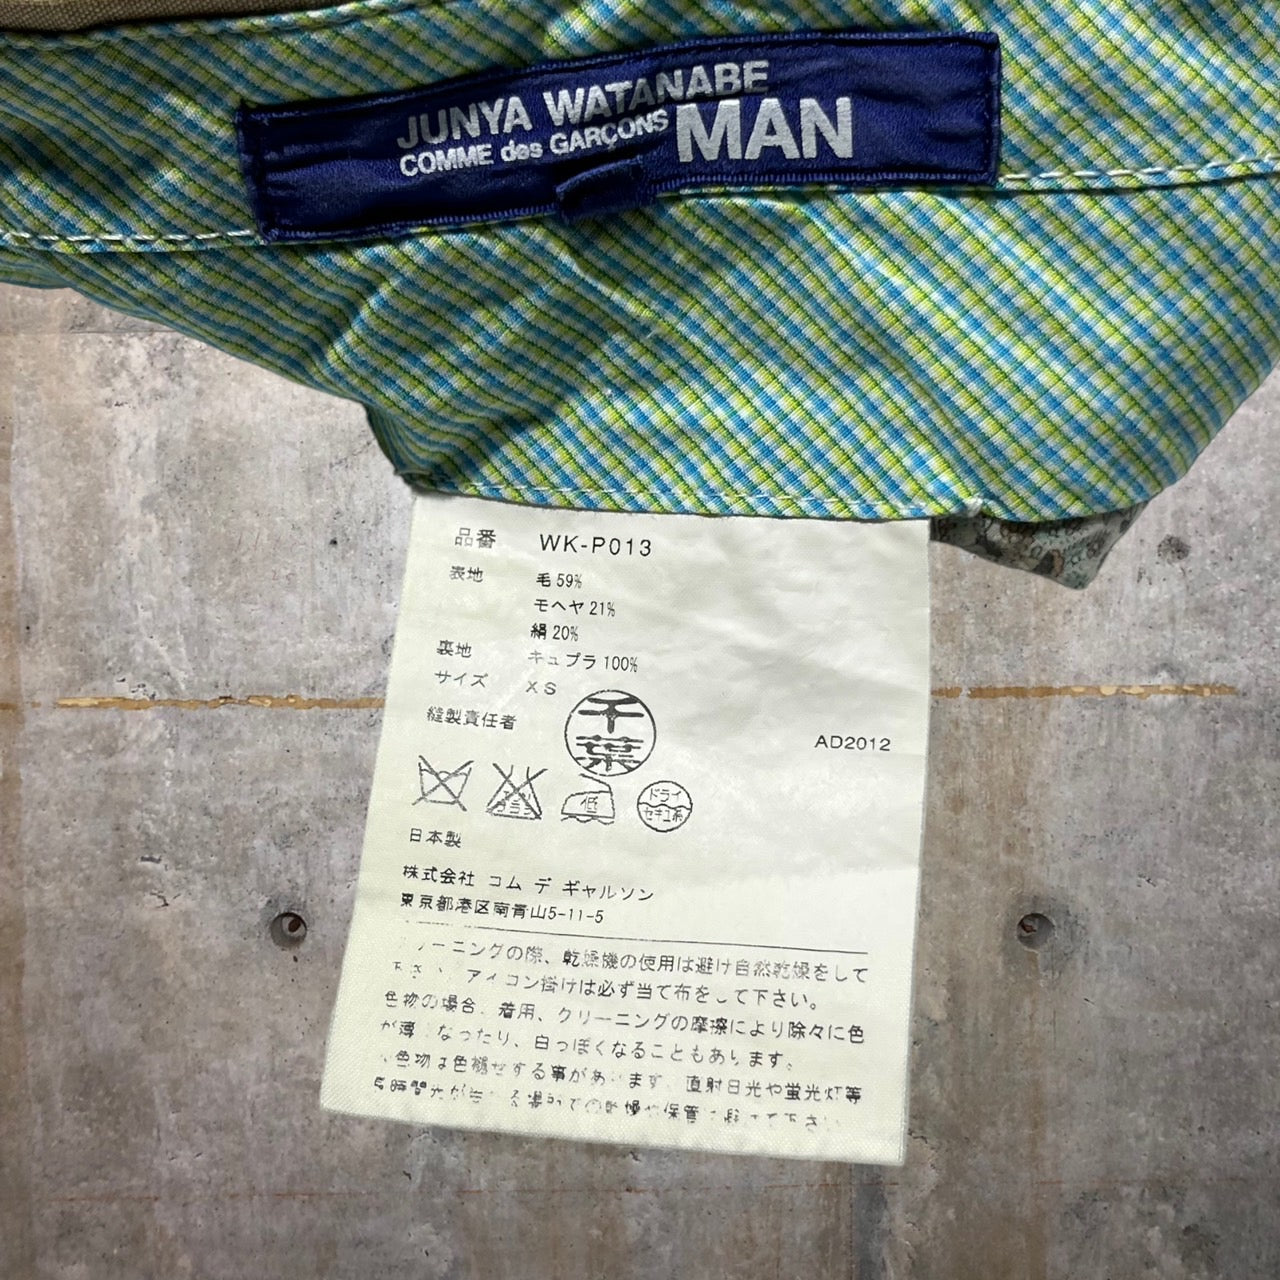 COMME des GARCONS JUNYA WATANABE MAN(コムデギャルソンジュンヤワタナベマン) 13SSシルク混ボタンフライパンツ WK-P013 XS ベージュ AD2012